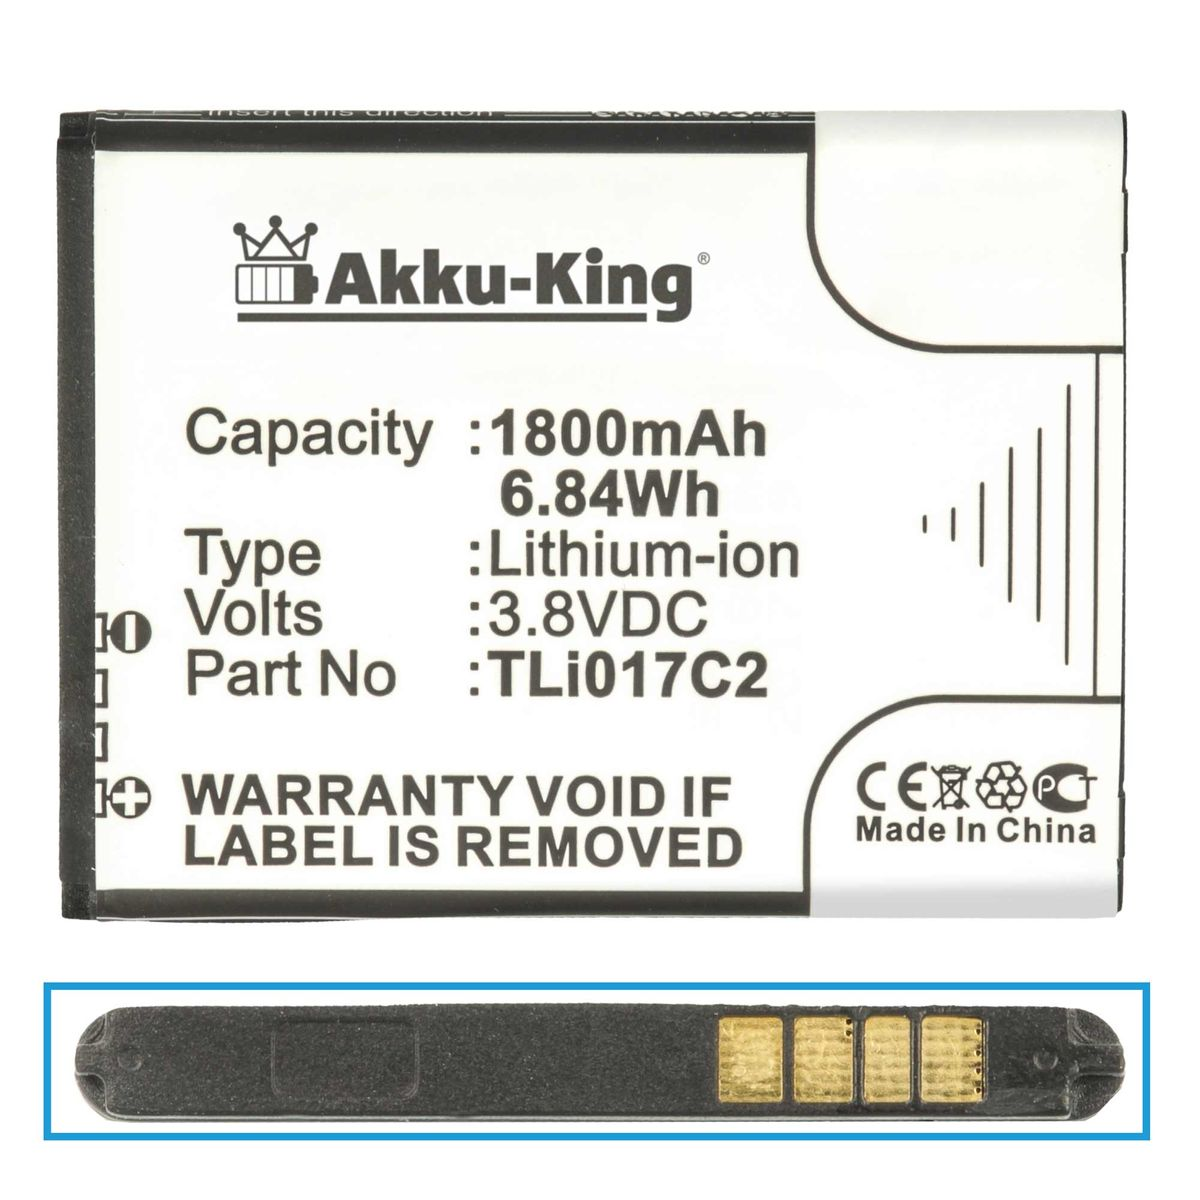 mit 1800mAh Li-Ion AKKU-KING 3.8 TLi017C2 Akku Vodafone kompatibel Handy-Akku, Volt,